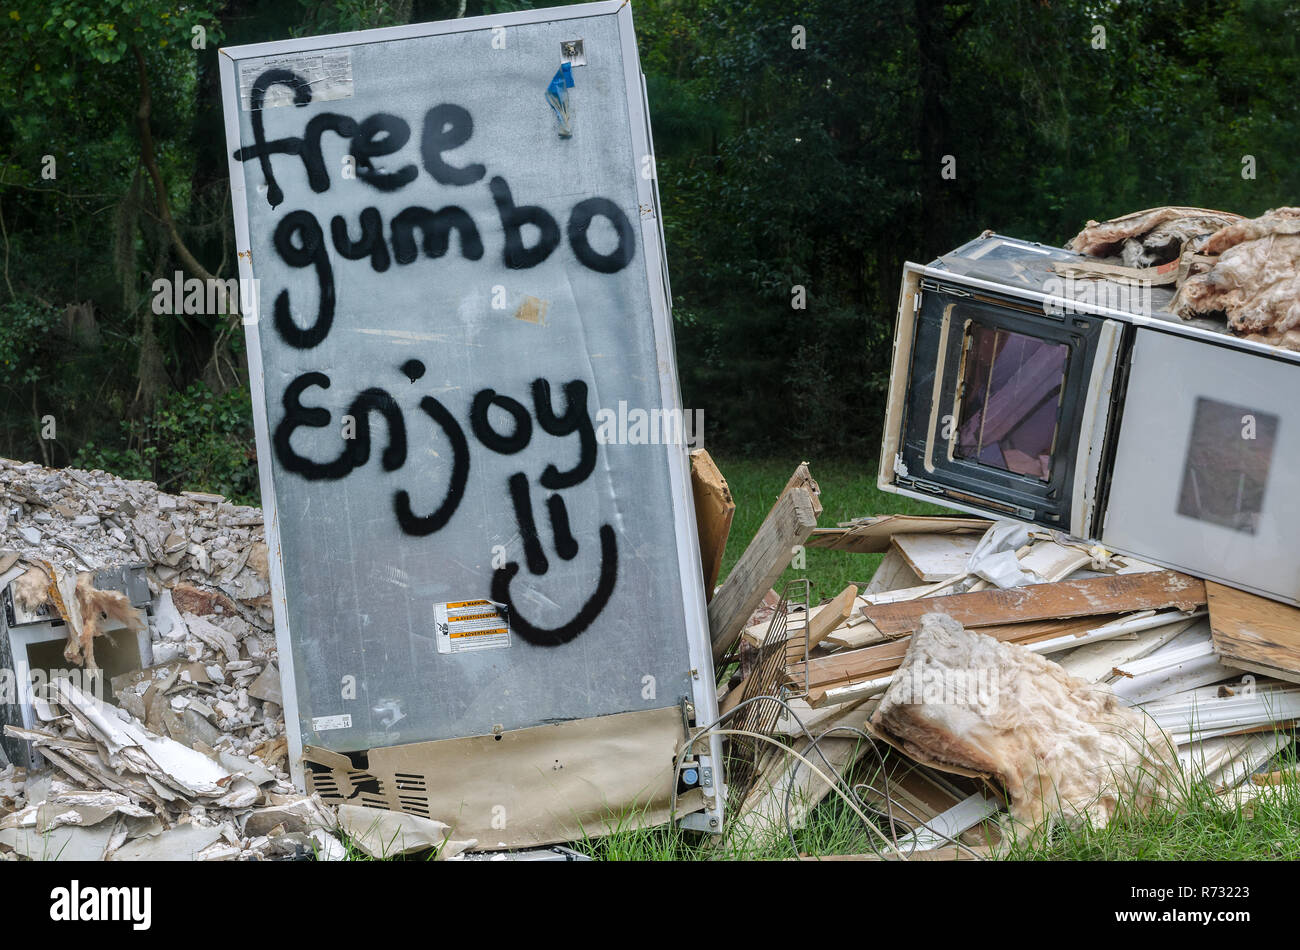 Une pile de débris d'inondation vous offre un moment de l'humour comme un signe sur une jetée congélateur annonce "free gumbo" après une inondation dans la région de Denham Springs, en Louisiane. Banque D'Images